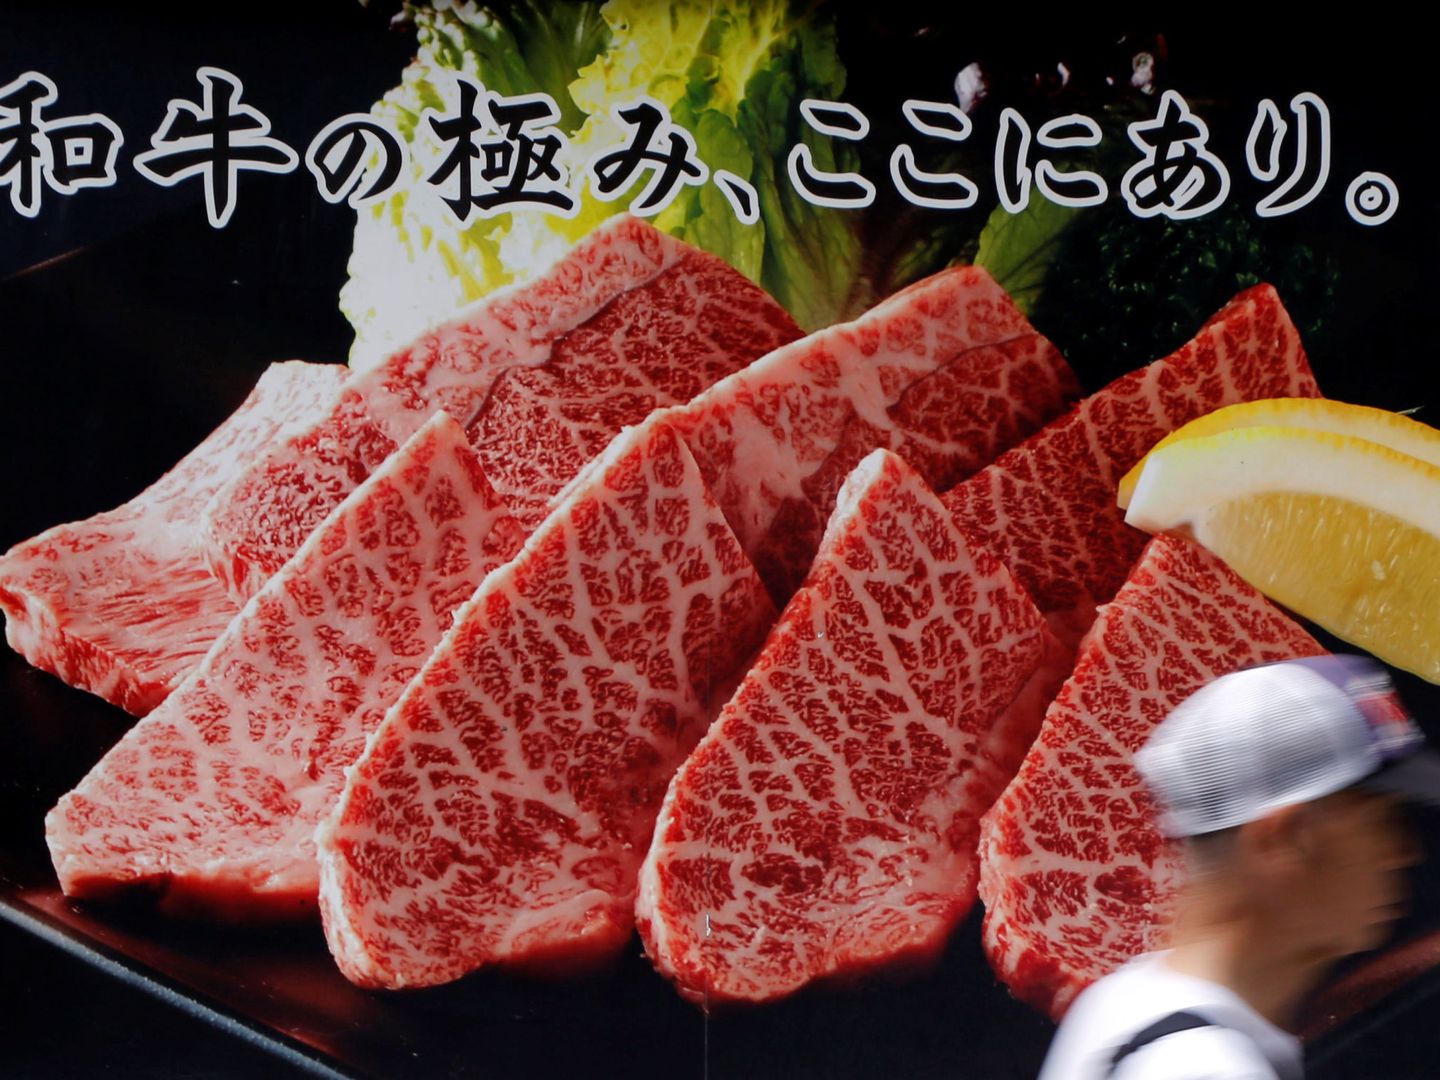 Un anuncio de carne de wagyu, la famosa ternera japonesa. (Reuters)